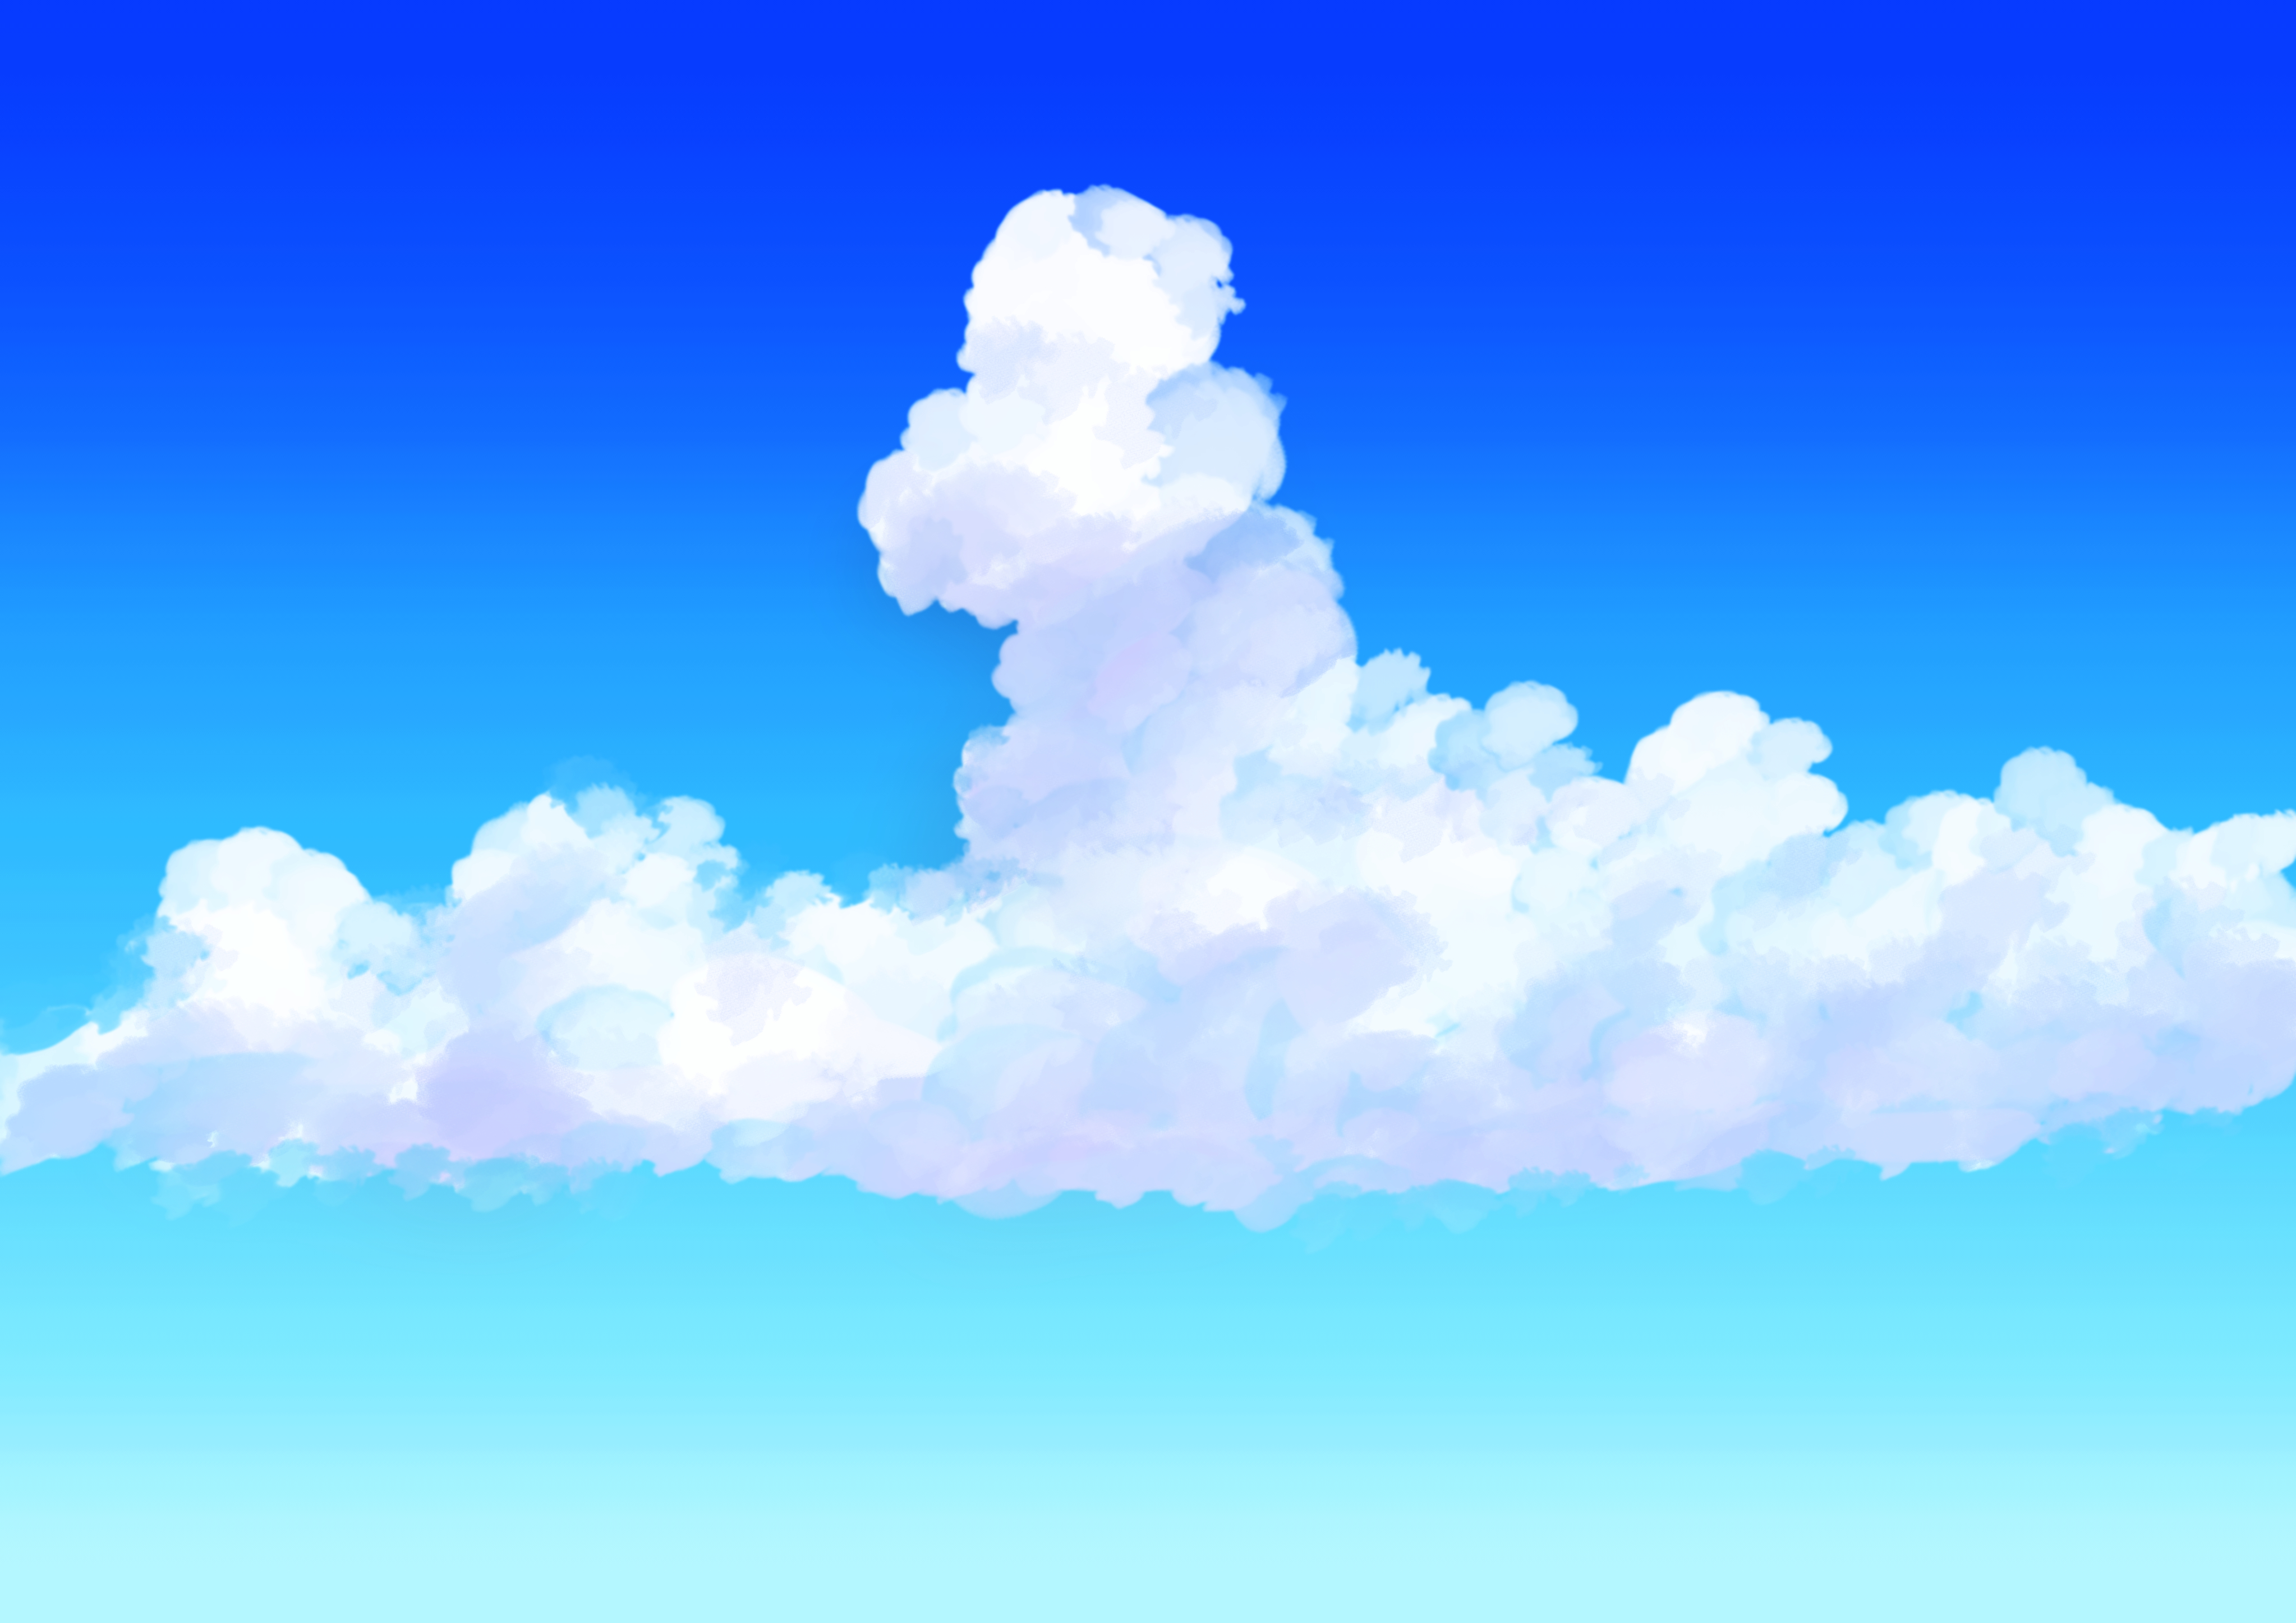 マオ 在 Twitter 上 空のフリー背景セットを描きました 空 イラスト フリー素材 夜空 入道雲 オリジナル Illustration 月 雲 T Co Luvwwroygl Twitter